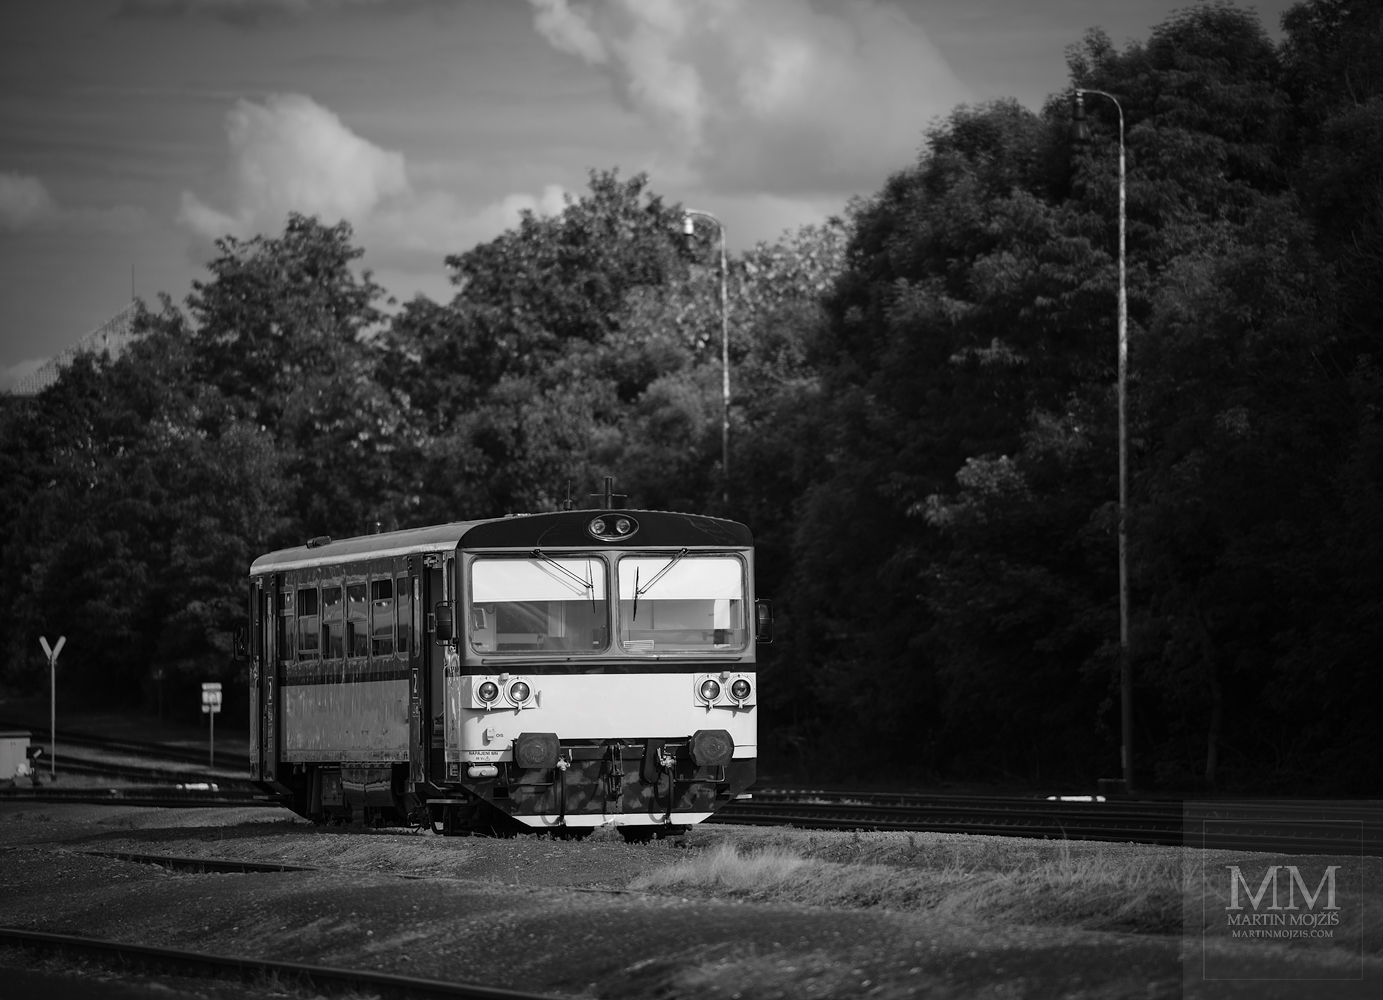 Motoráček odpočívá na nádraží před další cestou. Umělecká černobílá fotografie s názvem V ODPOČINKU II. Fotograf Martin Mojžíš.